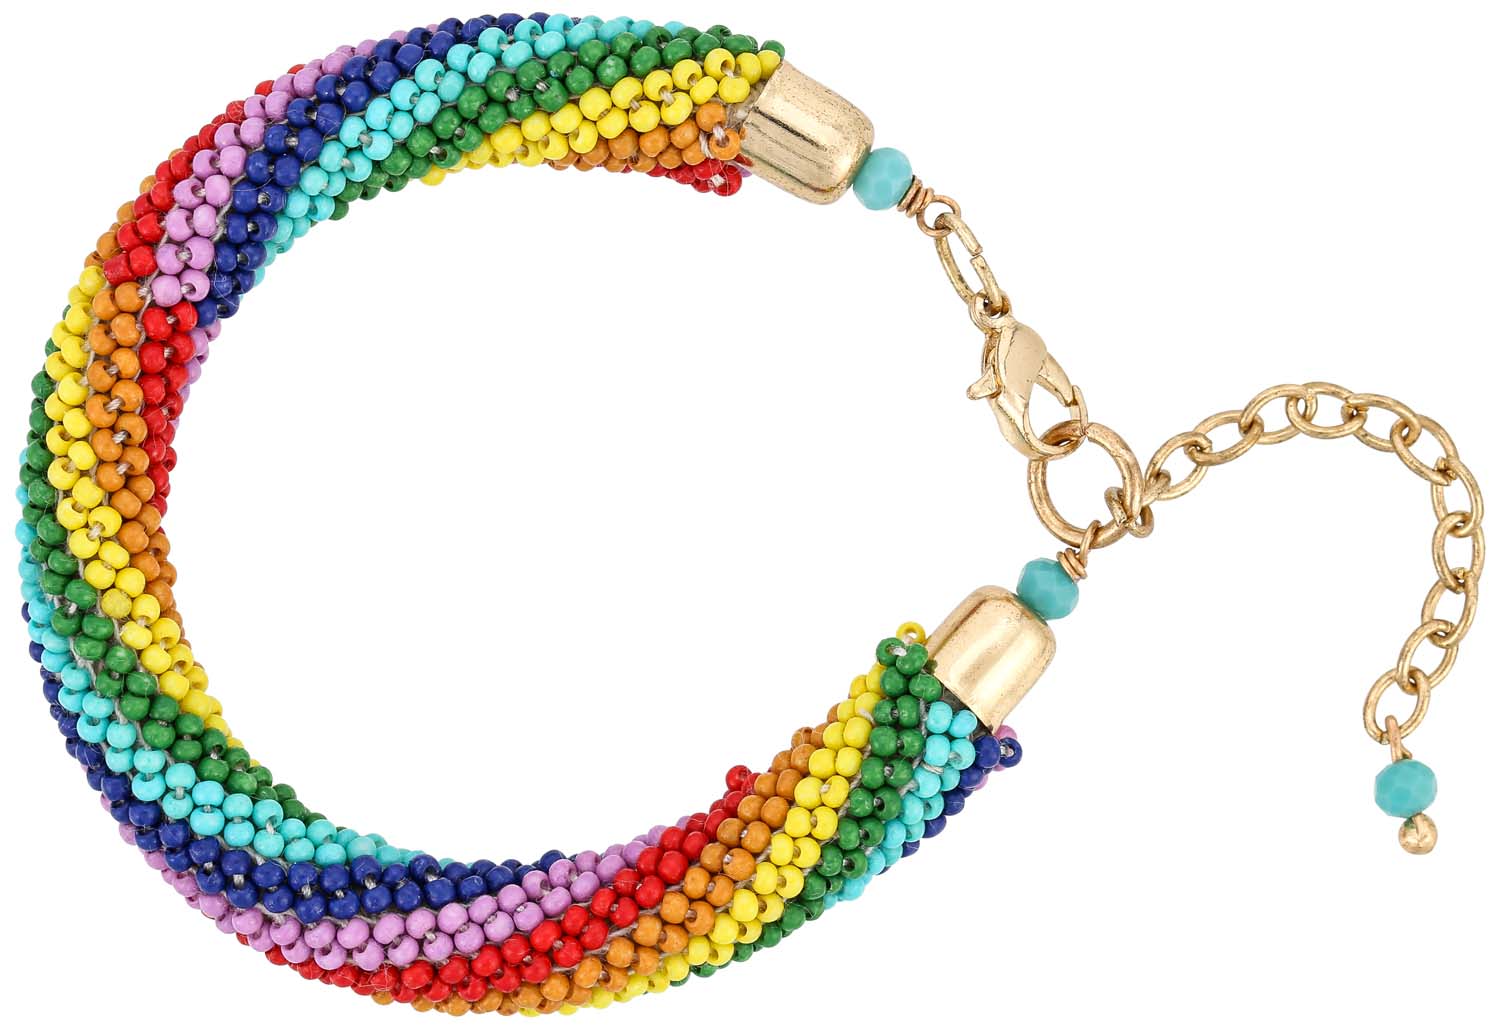 Bracelet - Pretty Rainbow